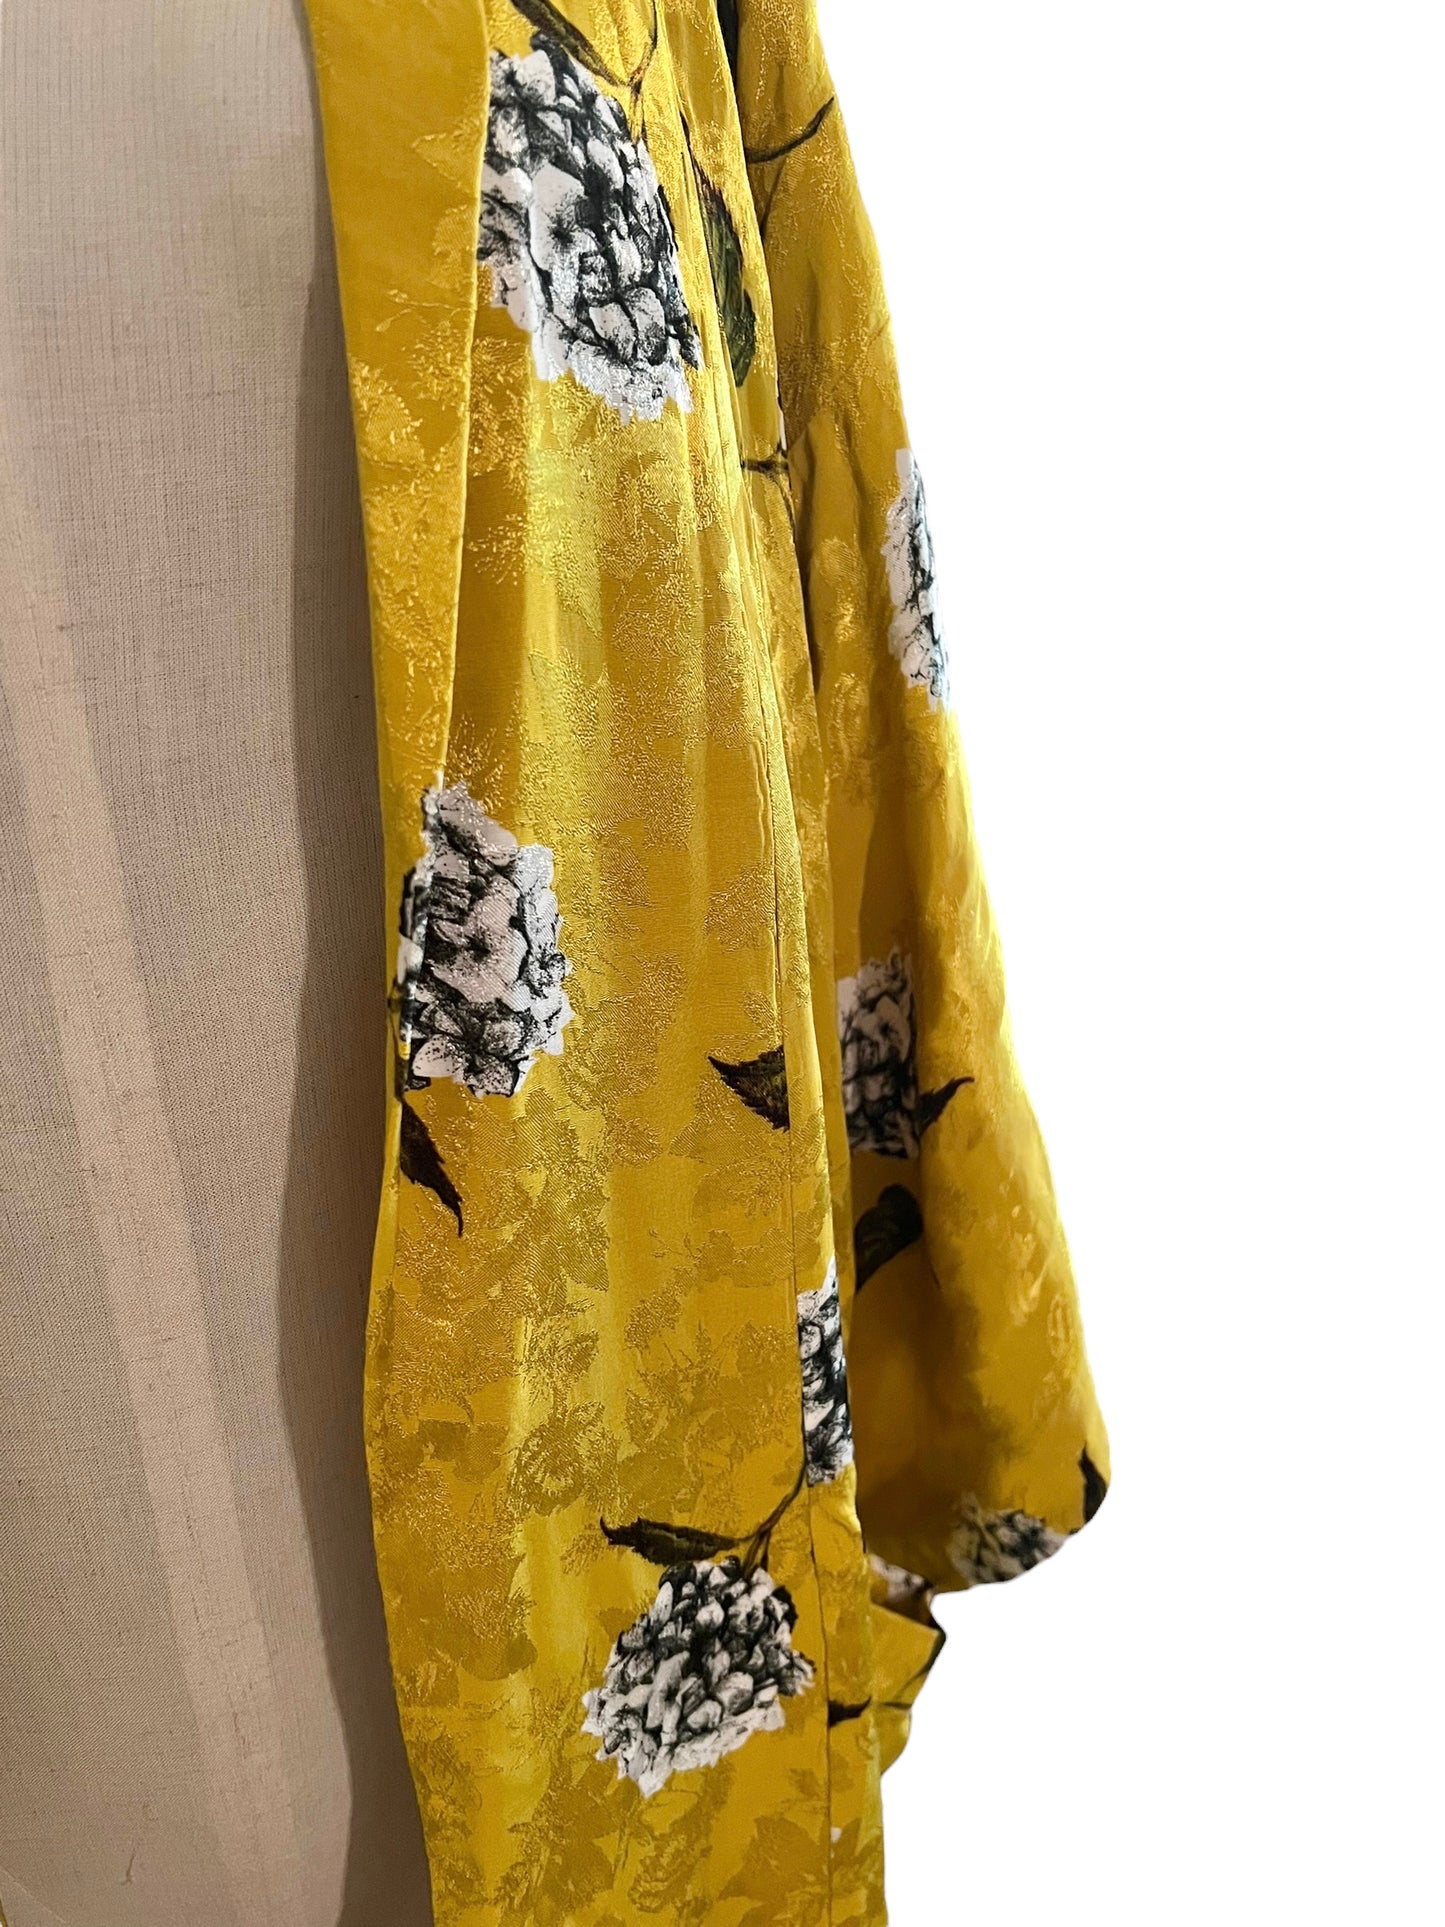 Topshop Size 4 Mustard Floral Print Kimono